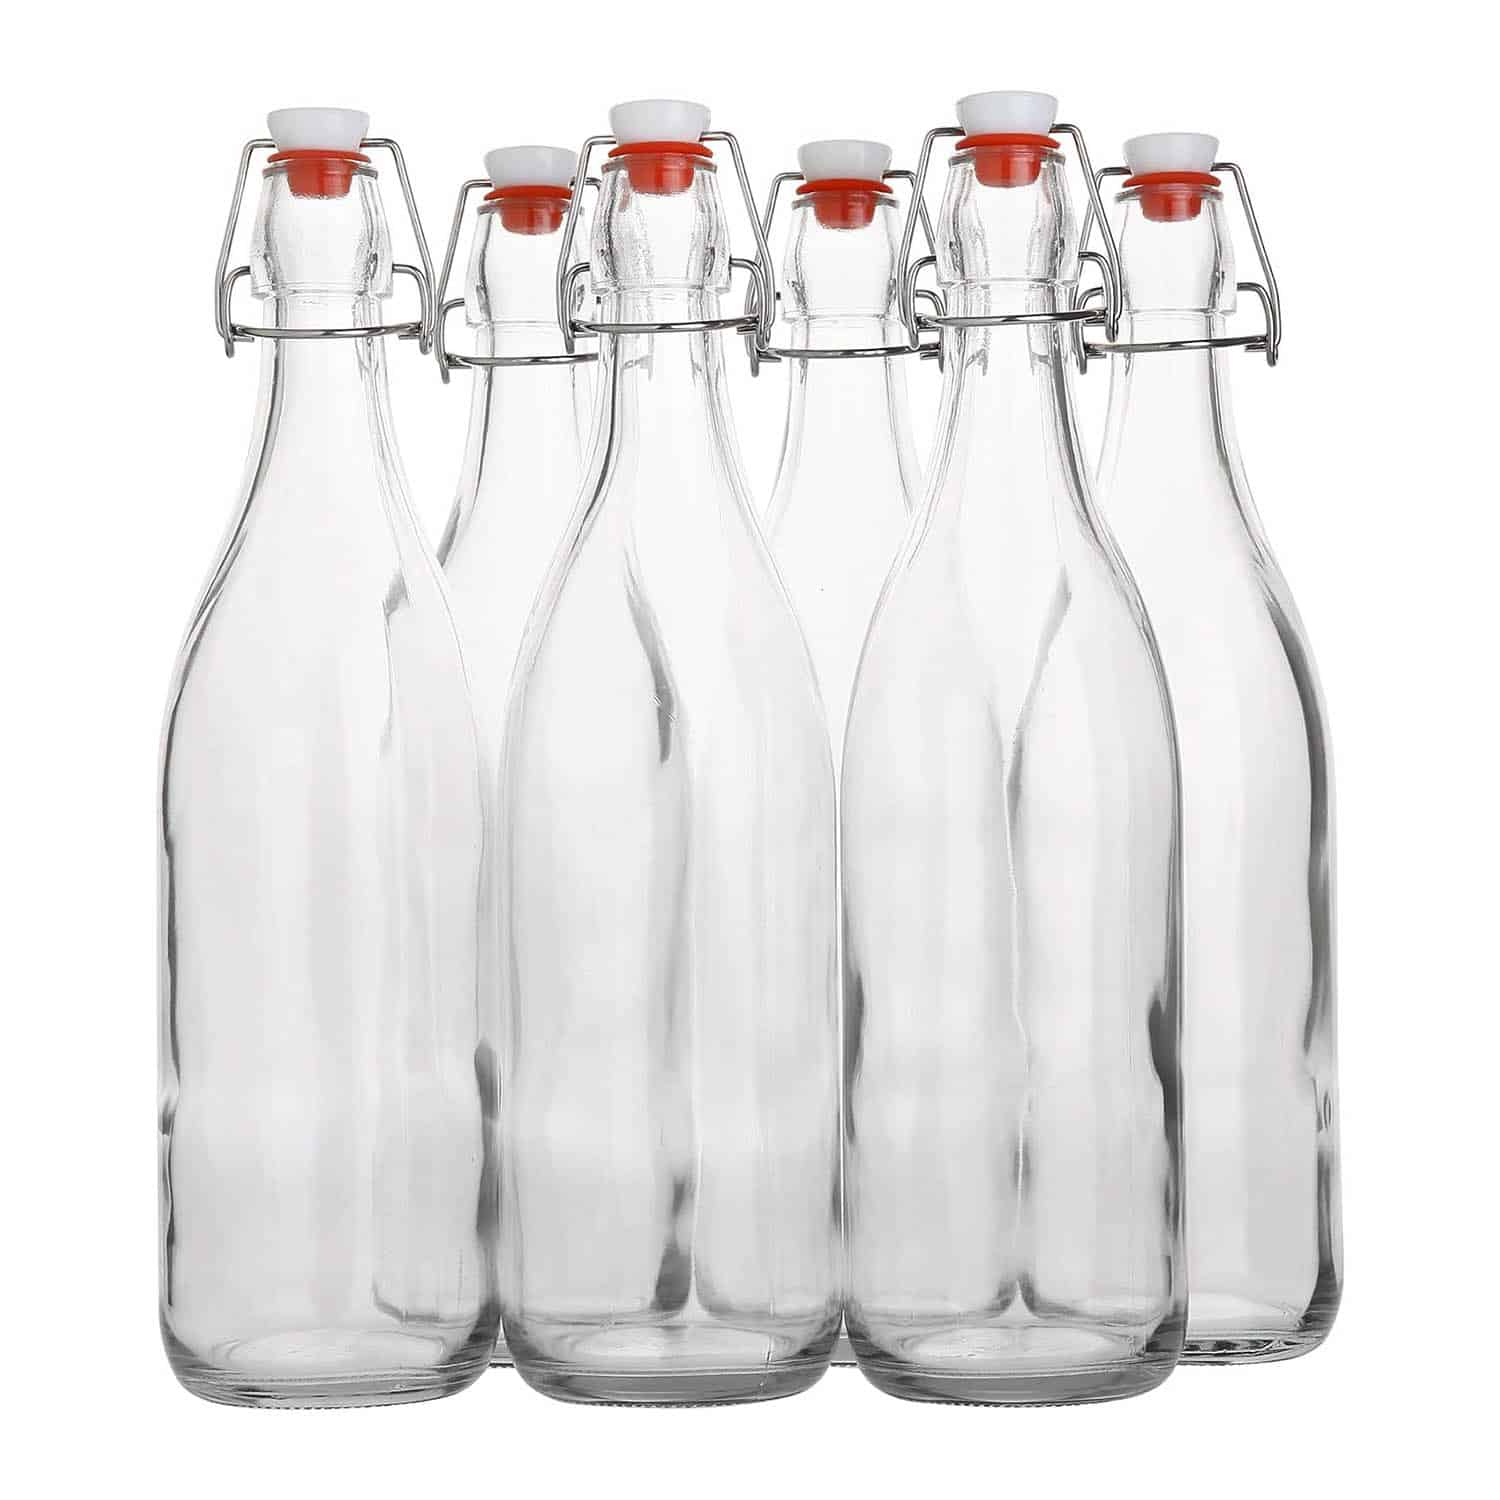 Flip-Top Glass Bottles for Beverages, Oil, Vinegar, Kombucha, Water Kefir